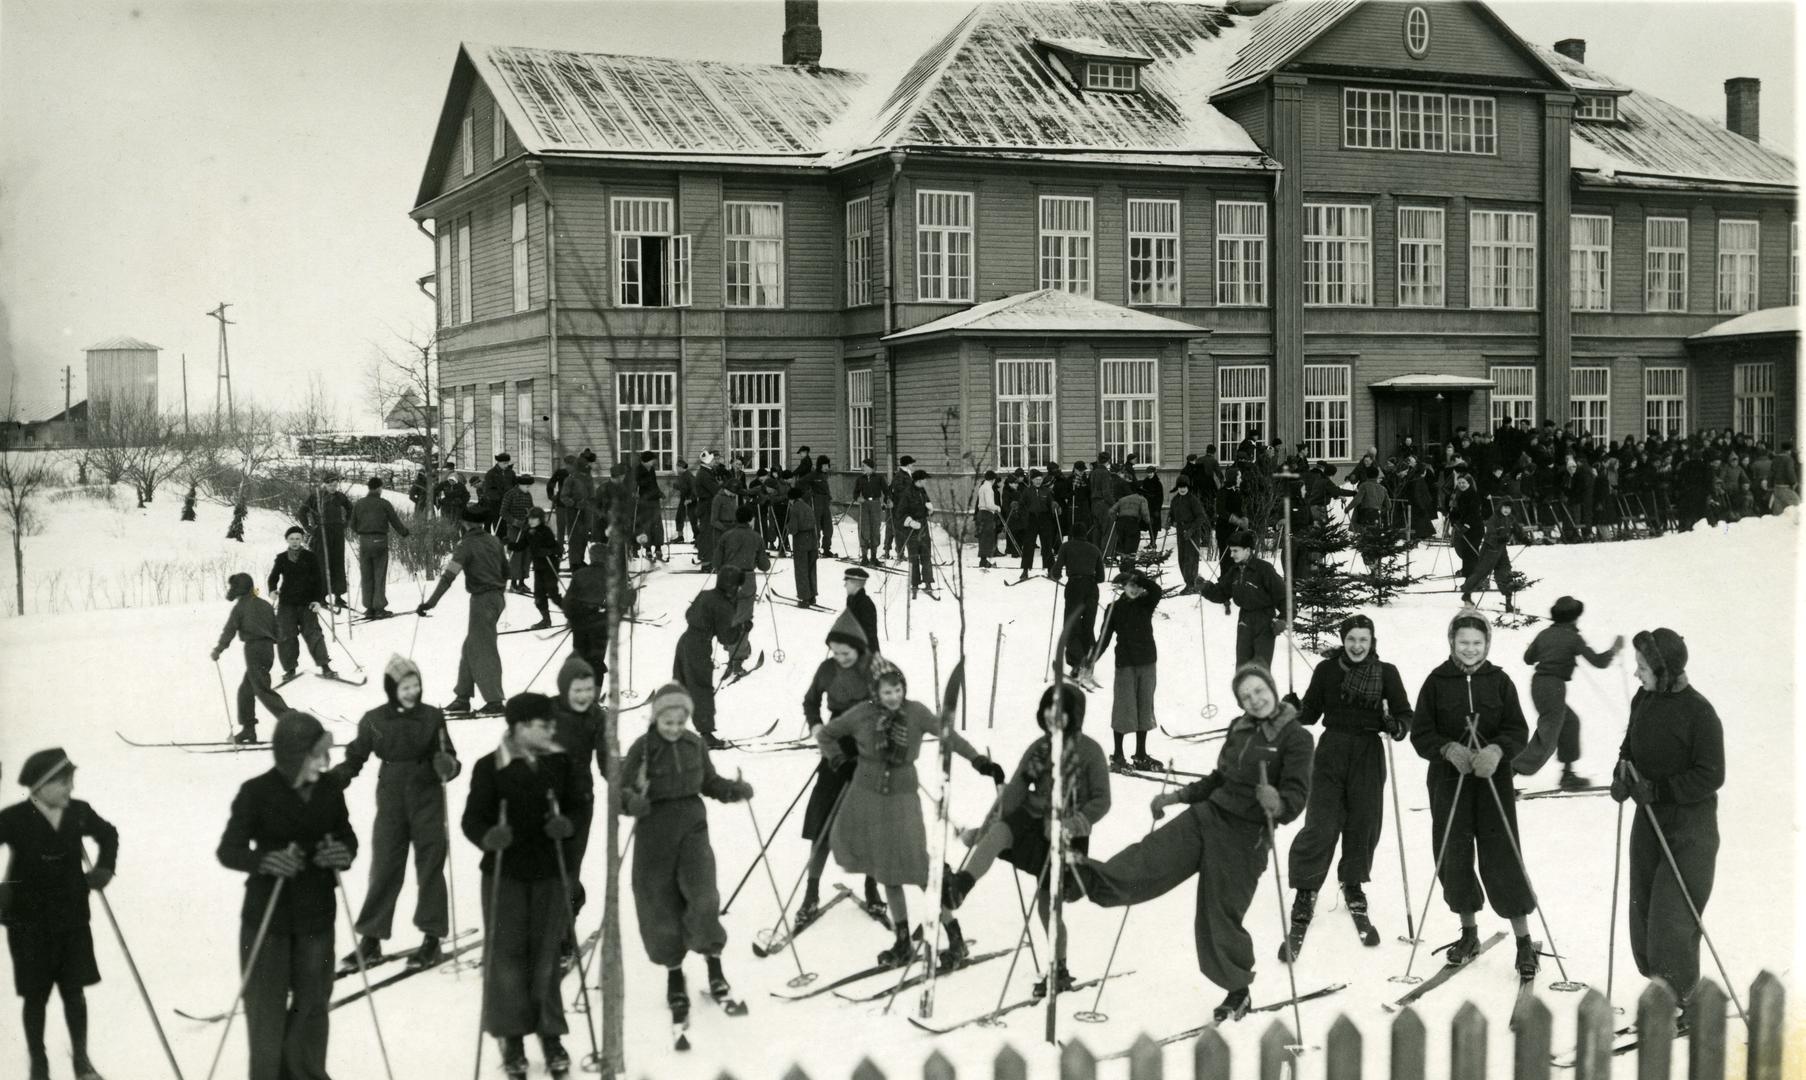 Väike-Maarja Secondary School Winter Sports Day 1938/39. A winter